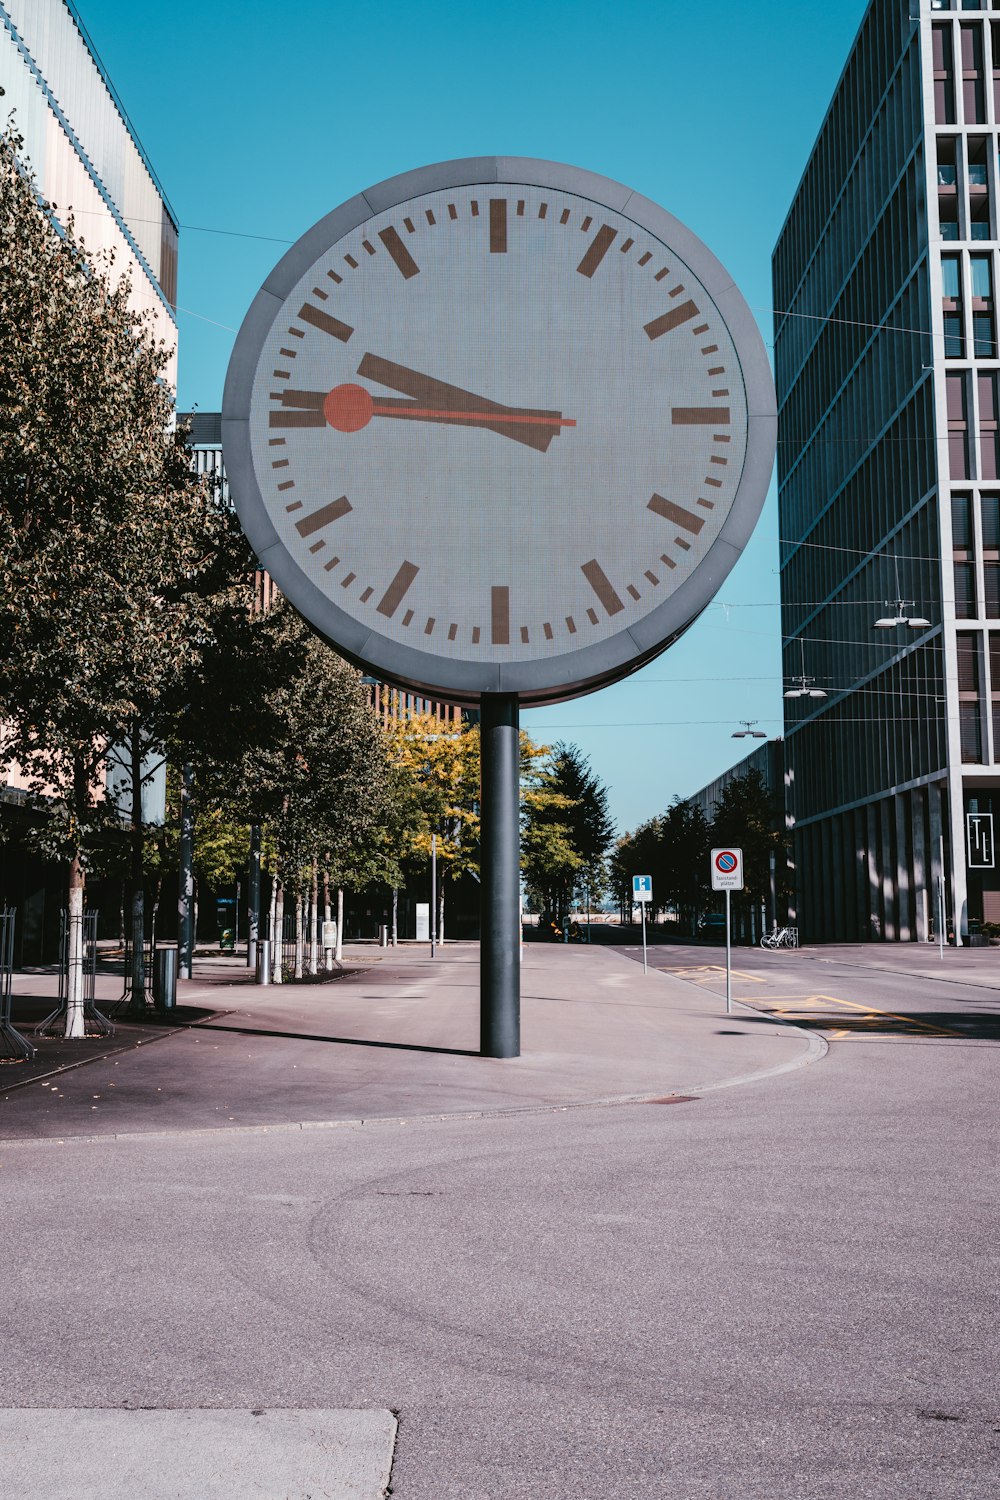 Eine große Uhr auf einem Mast mitten auf einer Straße